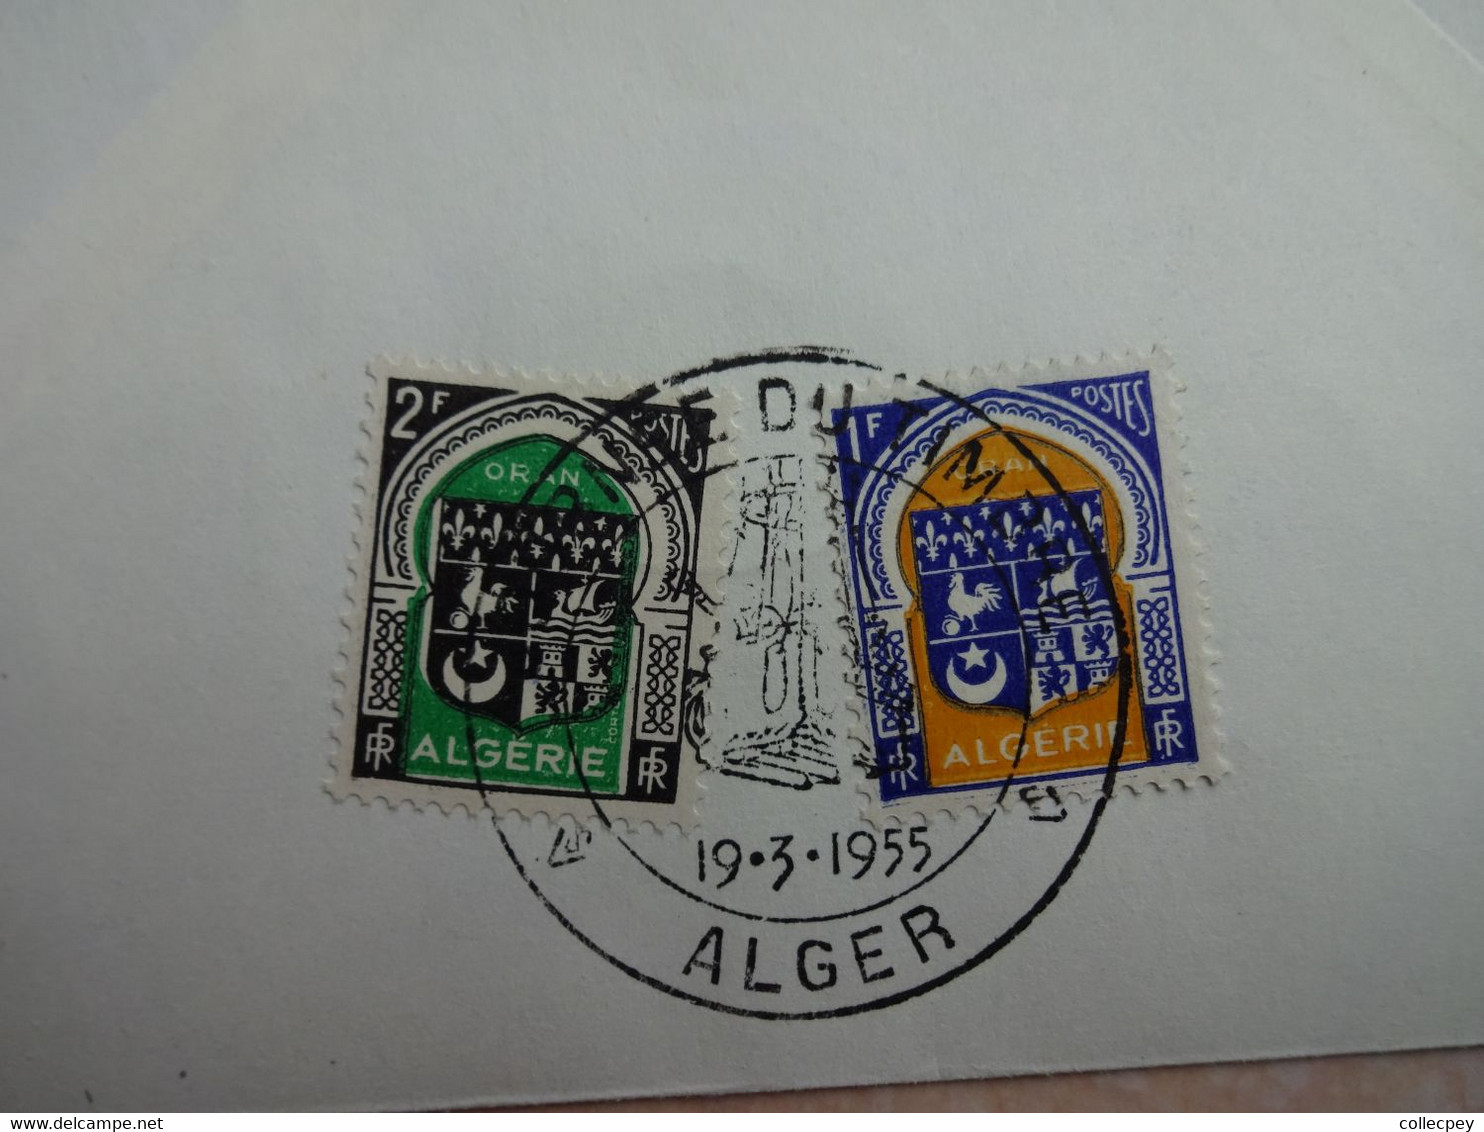 FRANCE/ ALGÉRIE - Enveloppe FDC De La Journée Du Timbre De Alger En 1955 - FDC